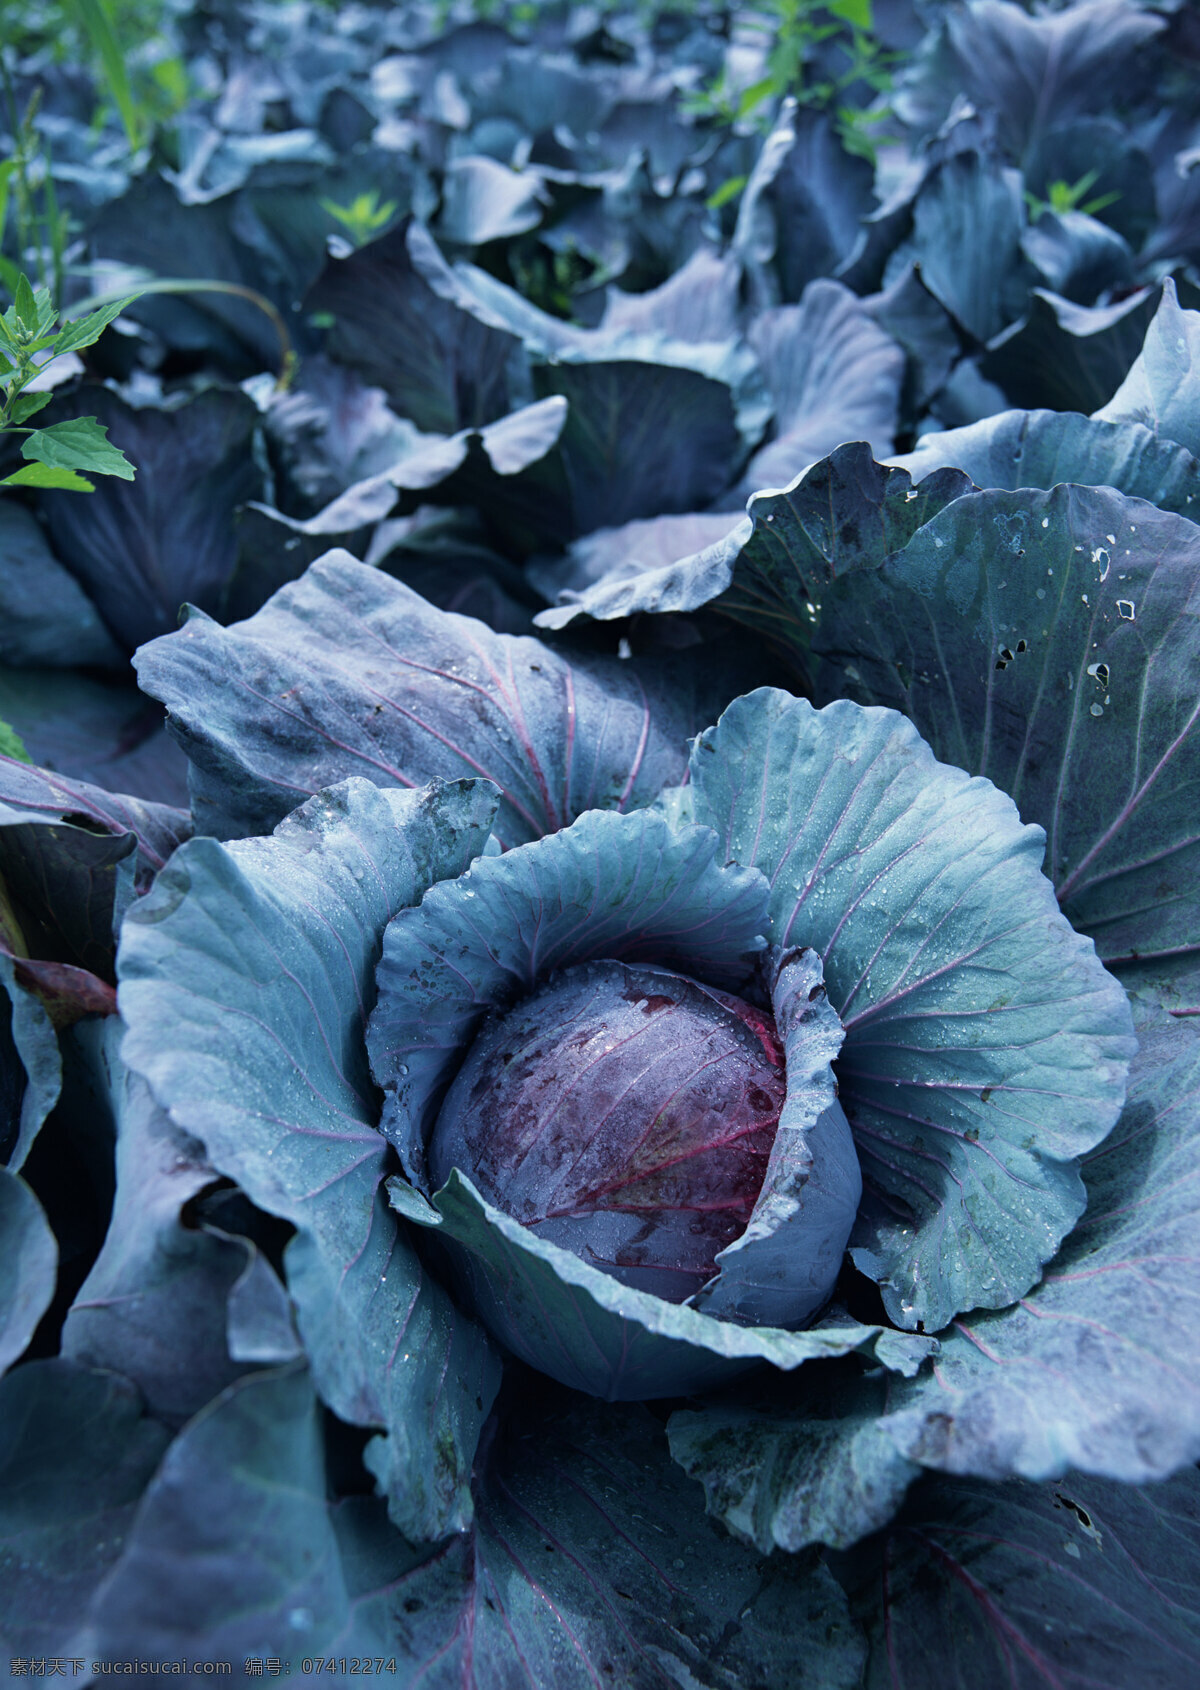 菜园里的包菜 新鲜蔬菜 包菜 农作物 绿色食品 摄影图 高清图片 水果蔬菜 餐饮美食 黑色